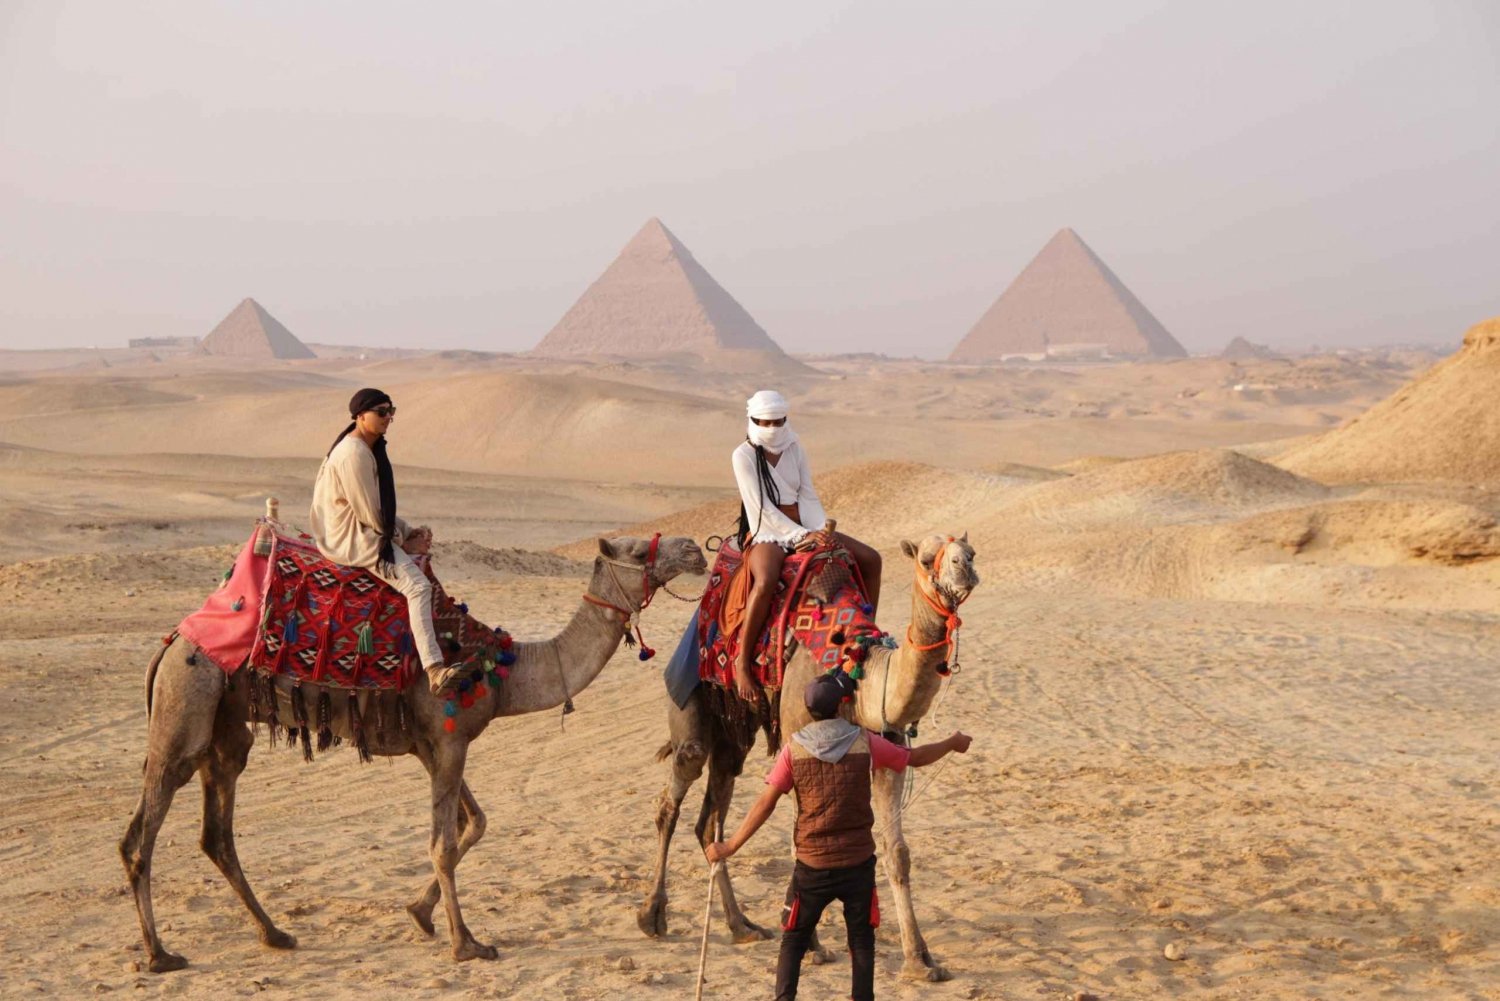 Kair: Wycieczka do piramid w Gizie z safari na quadach i przejażdżką na wielbłądzie